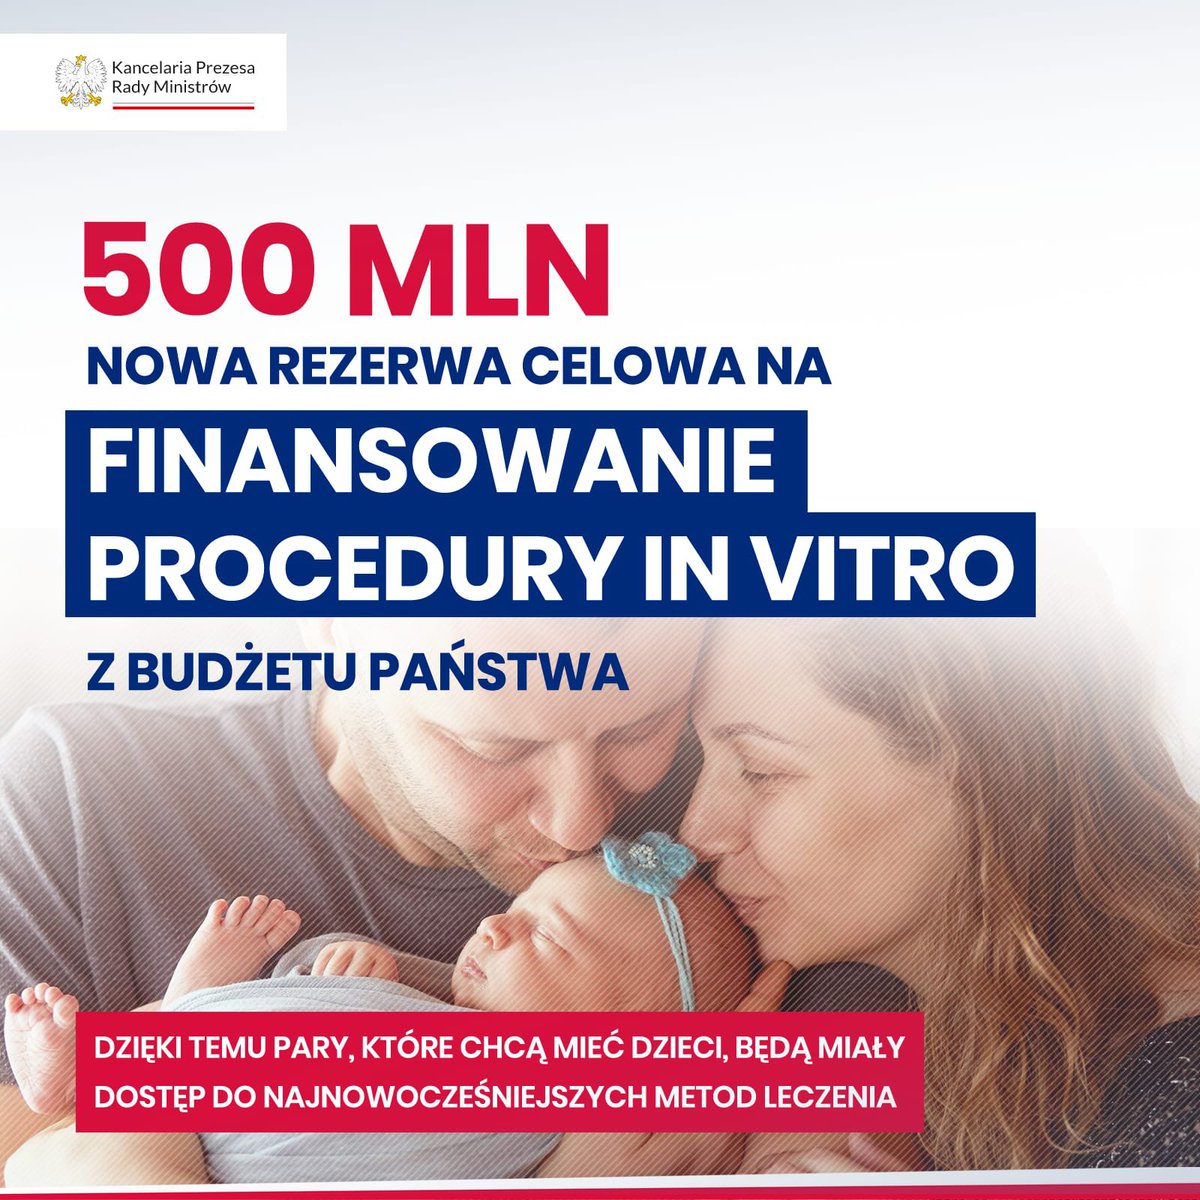 🧒 Ustawa budżetowa na 2024 r. zakłada finansowanie procedury in vitro - 500 mln zł ⤵️ Więcej ➡️ gov.pl/web/premier/ra…